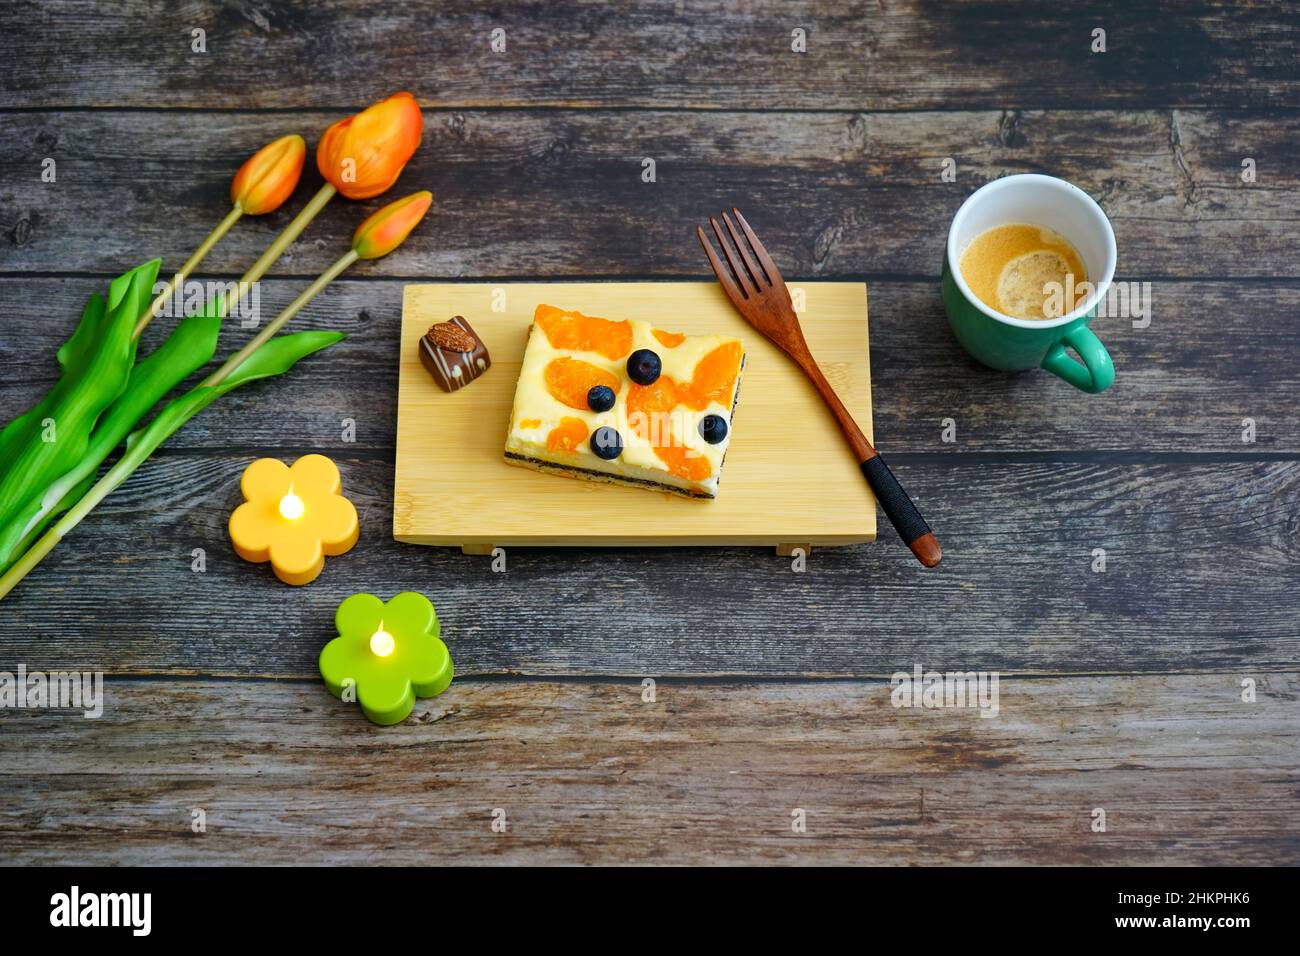 Tempo del caffè in Germania: Torta al formaggio fatta in casa e un caffè su un tavolo di legno con fiori di tulipano arancione per la decorazione. Foto Stock